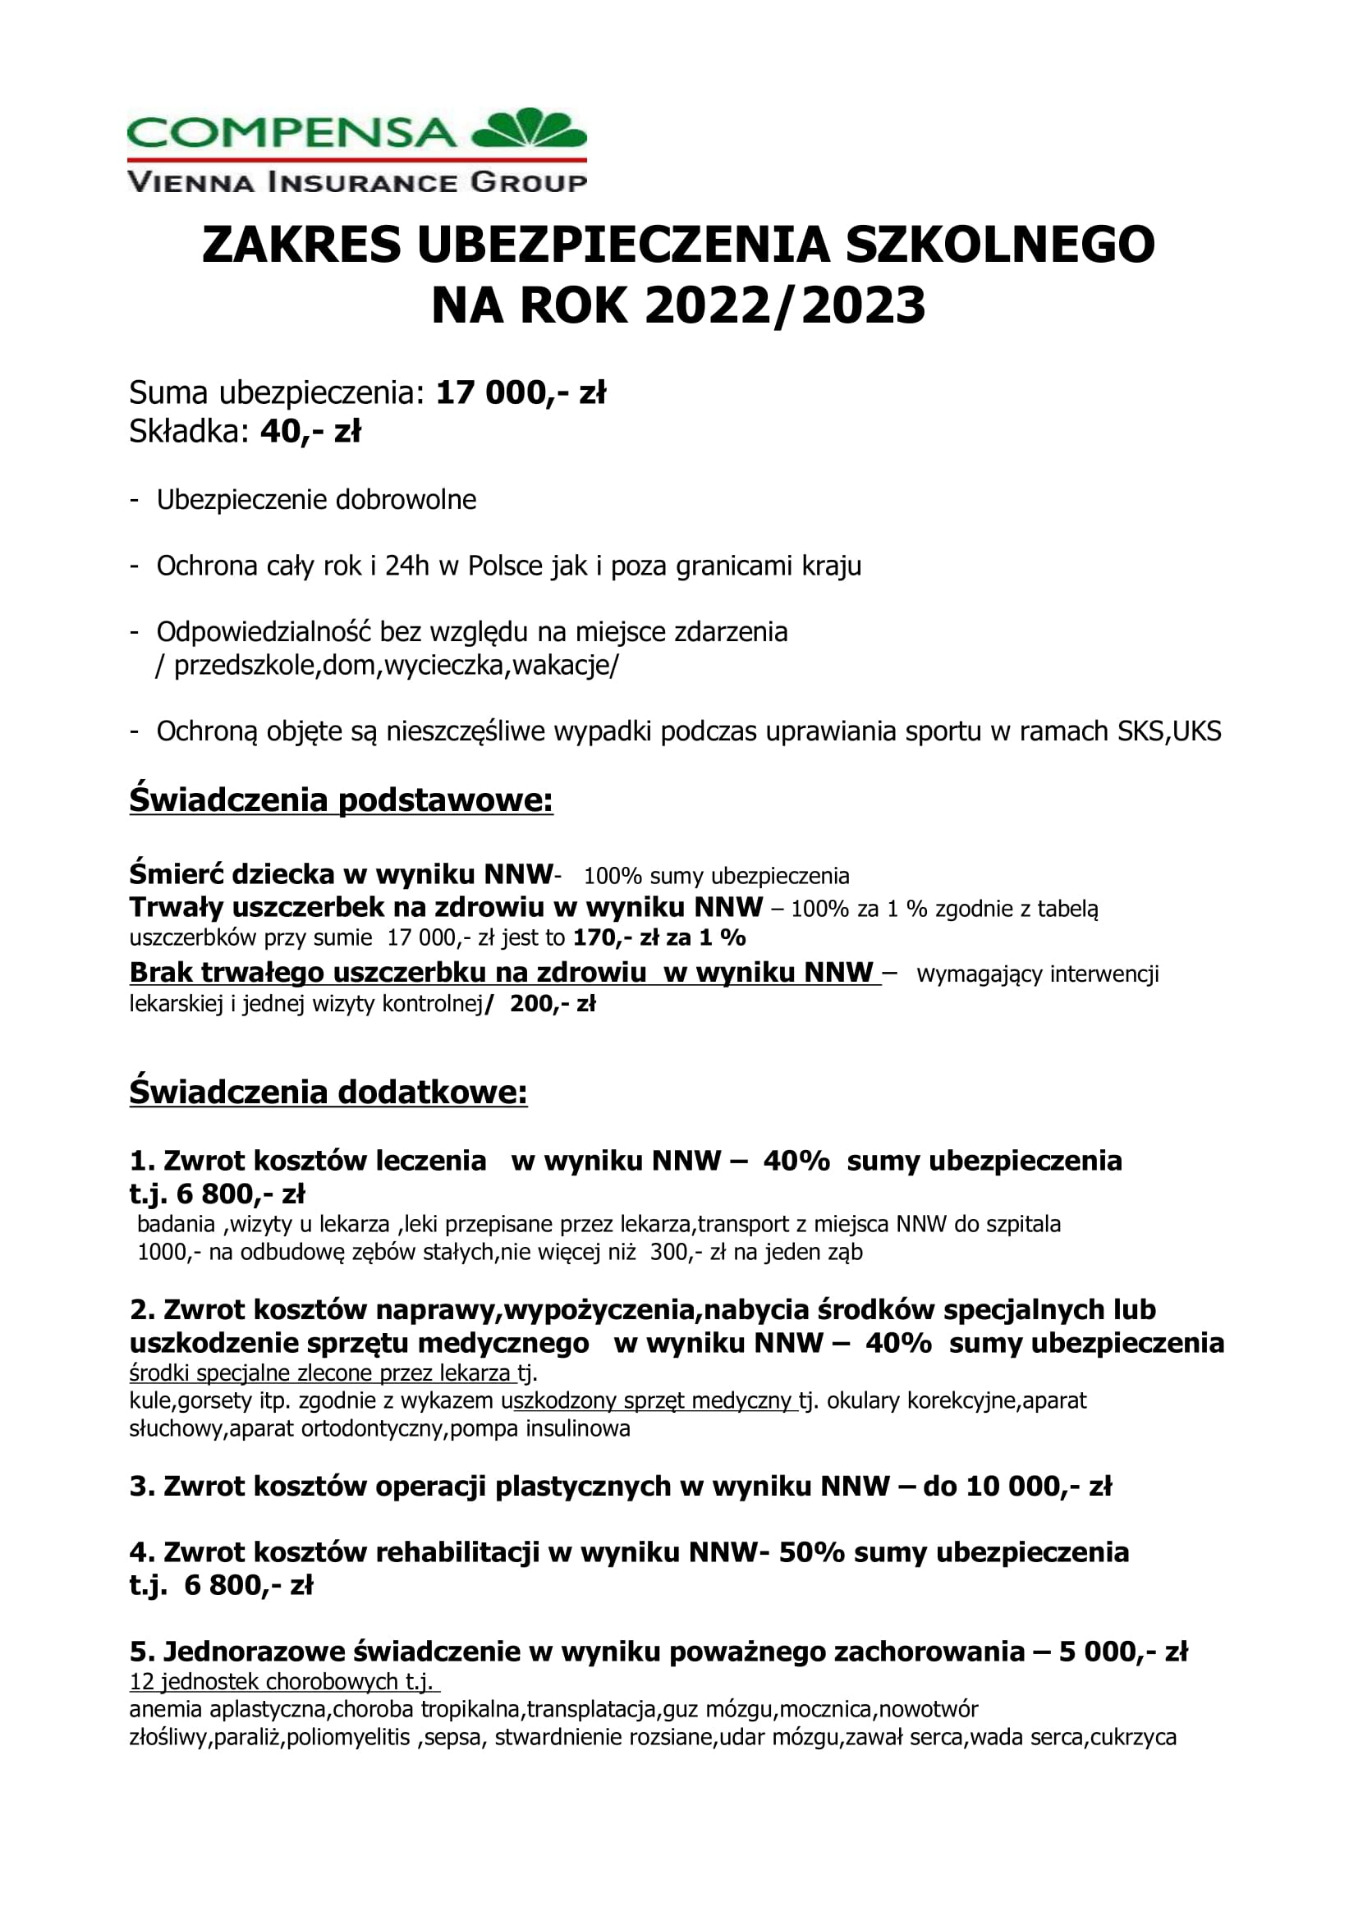 Zakres ubezpieczenia szkolnego na rok 2022/2023 - Obrazek 1